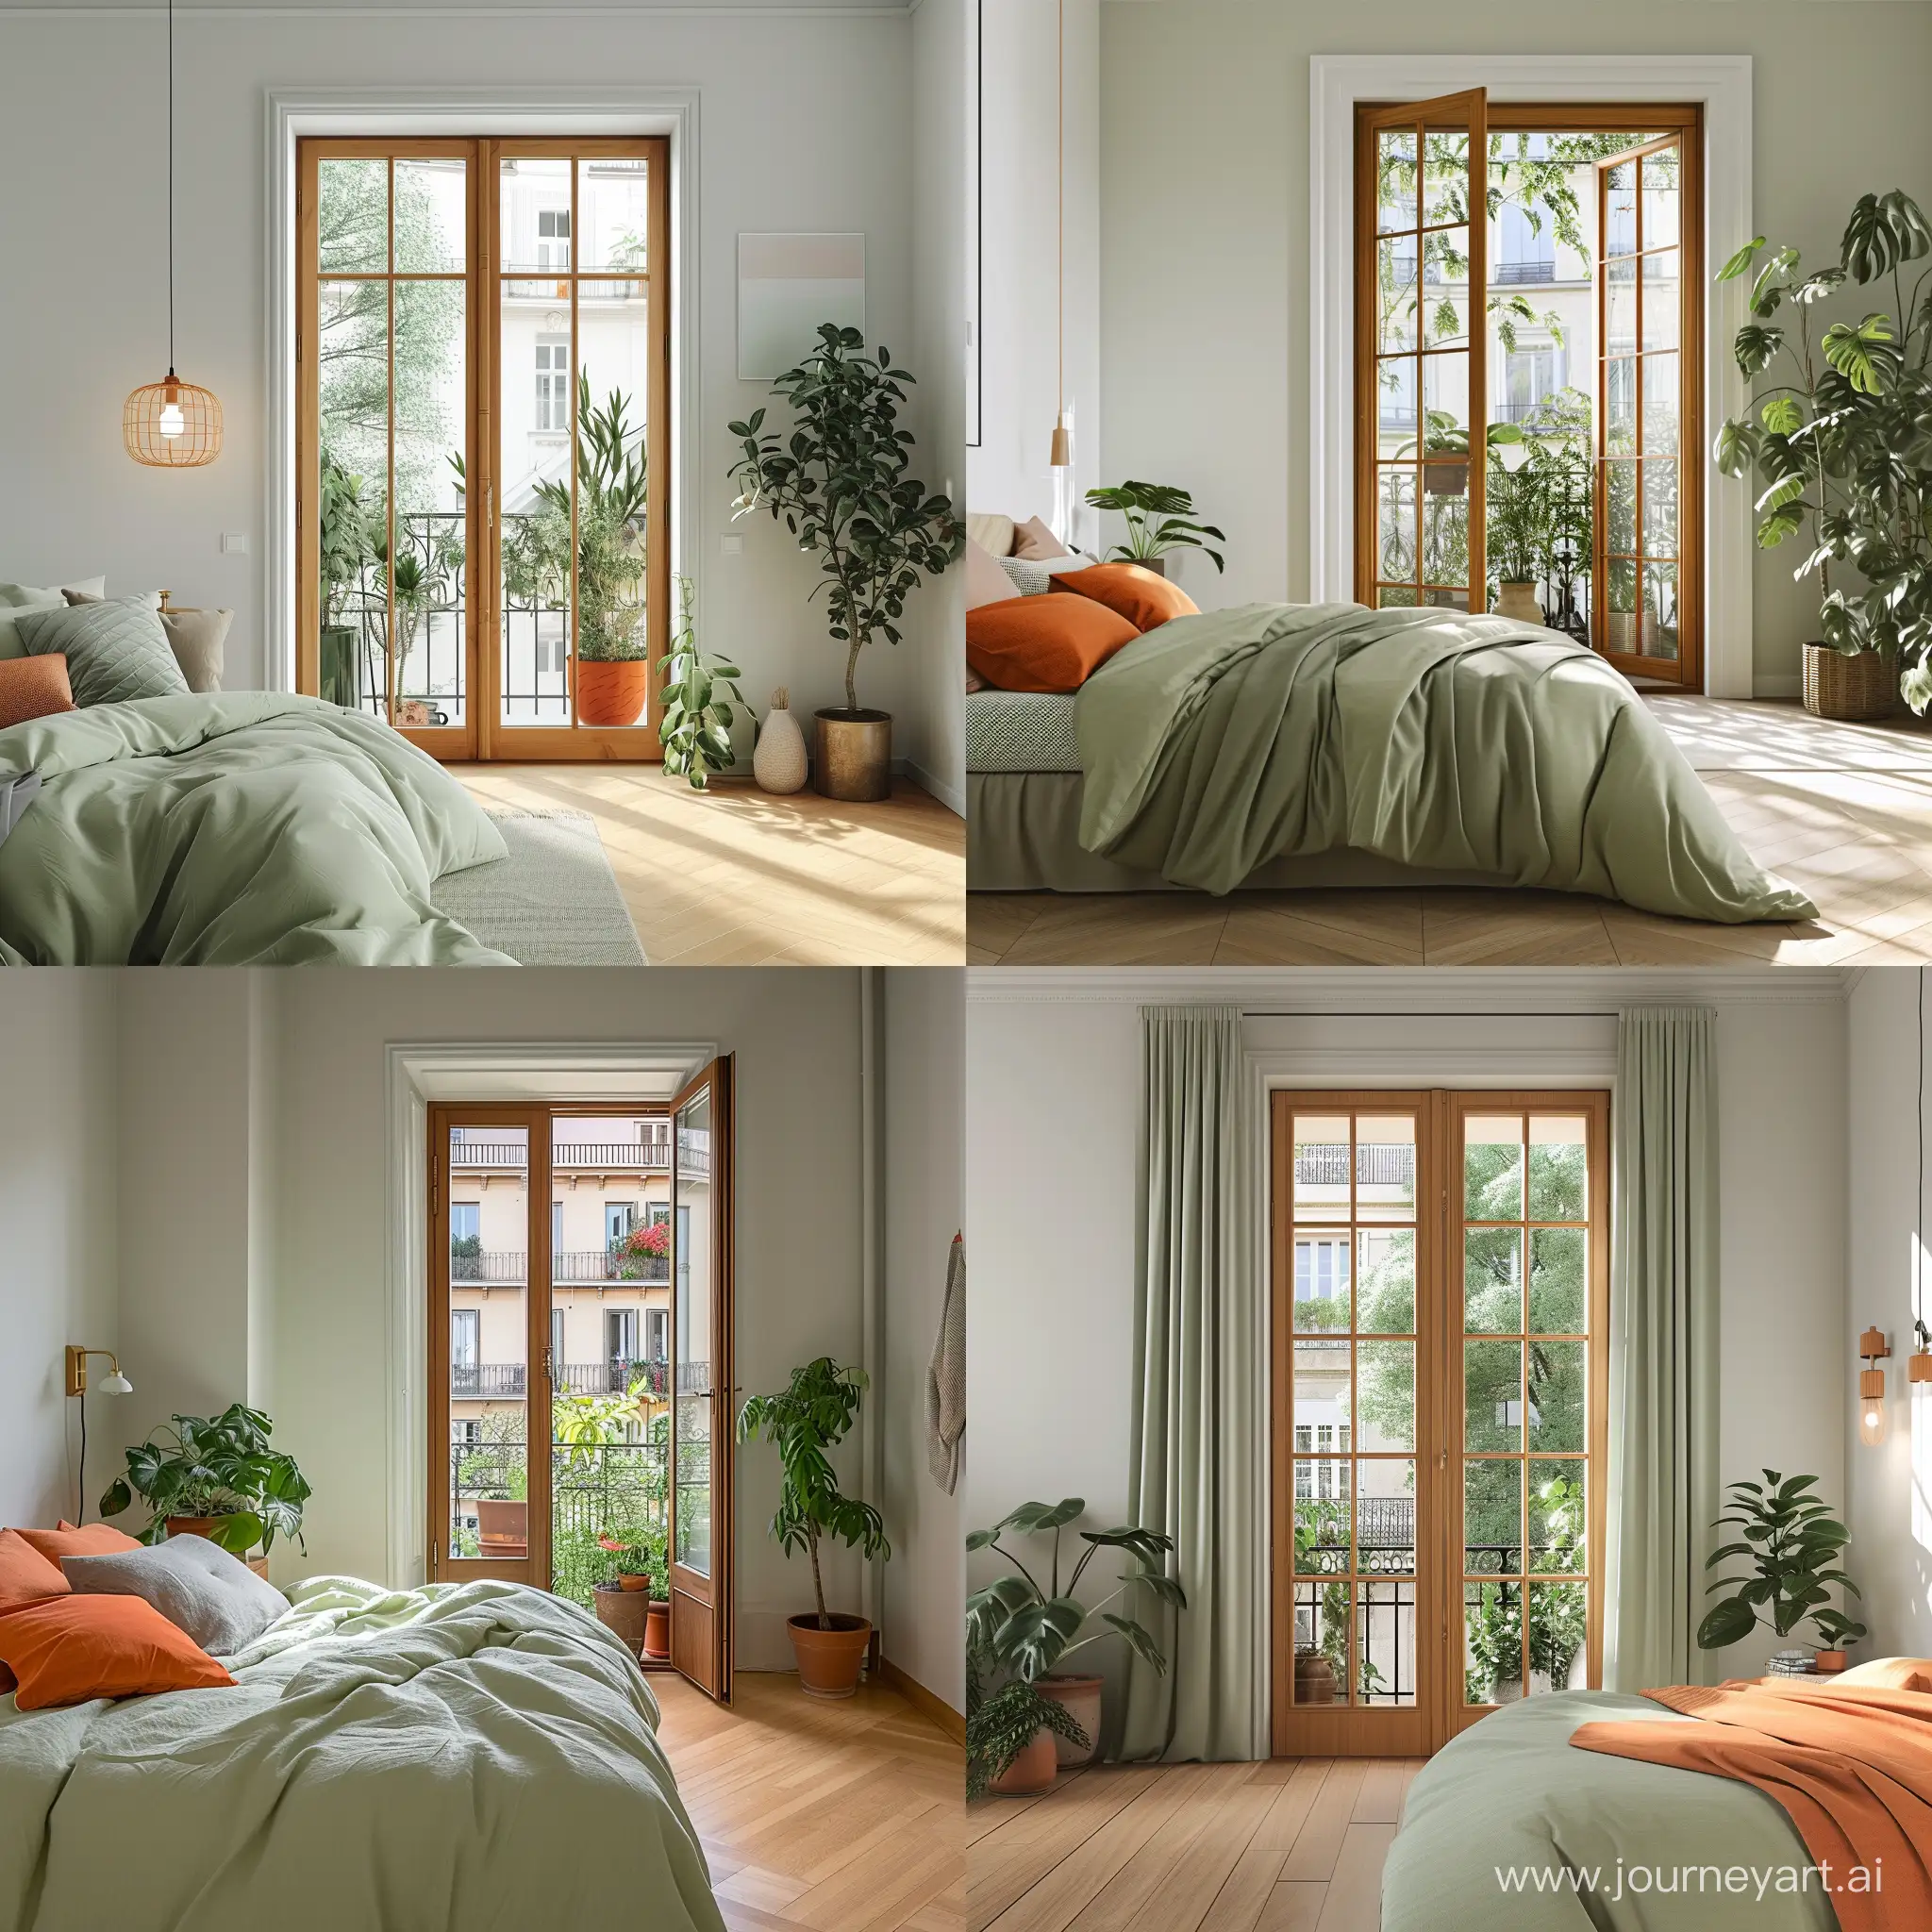 camera da letto moderna stile scandinavo con una porta finestra infisso color noce affaccio sul balcone con piante. Colore verde chiaro e arancione. Parquet chiaro. pareti bianche. 